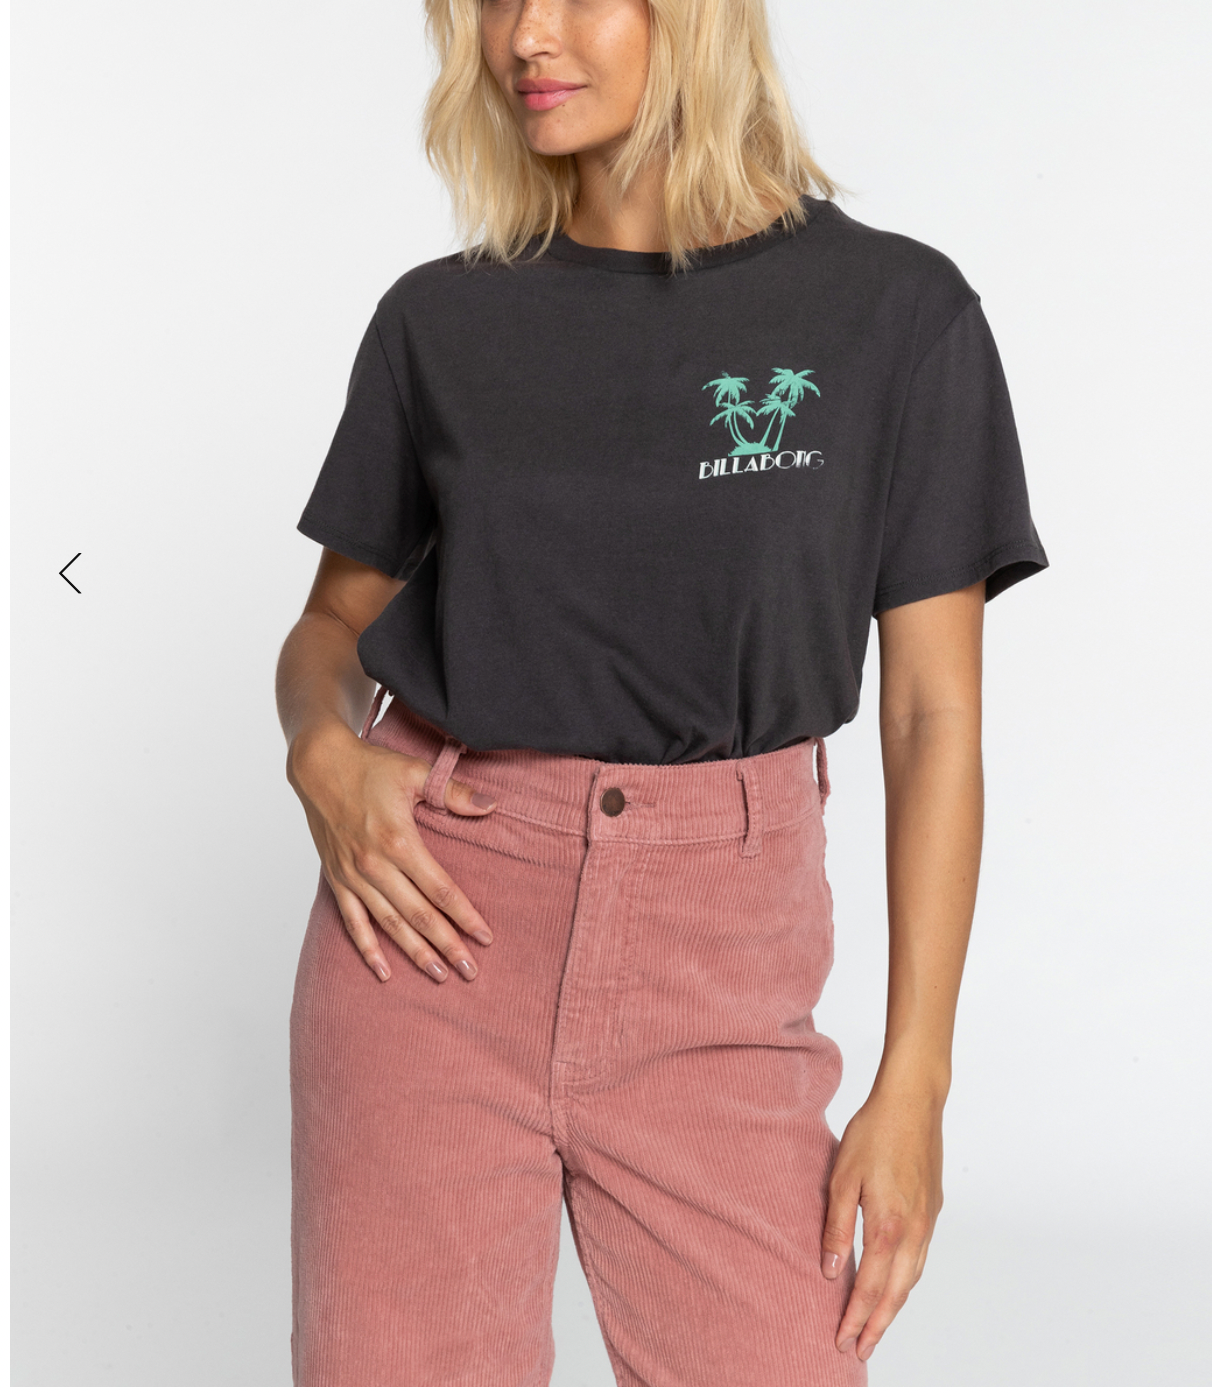 BILLABONG Trixie - T-Shirt for Women